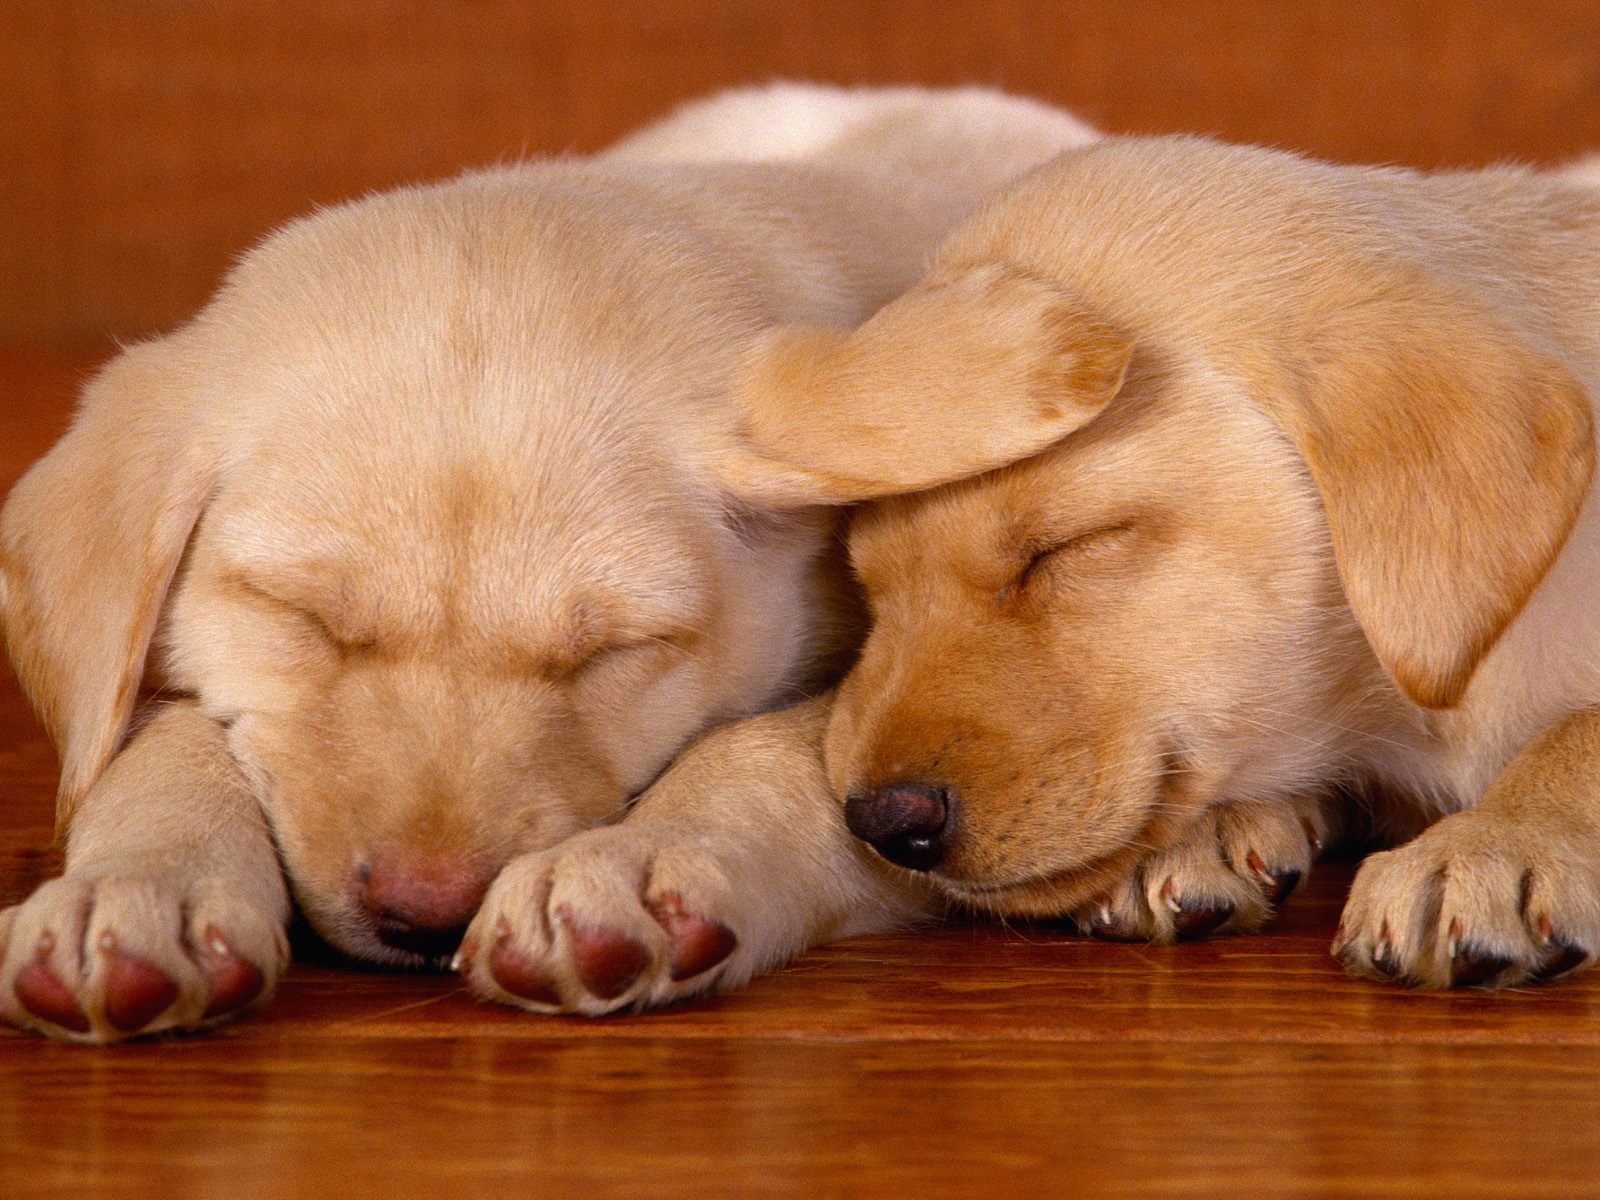 http://2.bp.blogspot.com/_89oxiIwvtak/STnIOwNPqII/AAAAAAAAF8c/ywuyaBtSjVk/s1600/Sleeping+on+the+Job,+Lab+Puppies.jpg